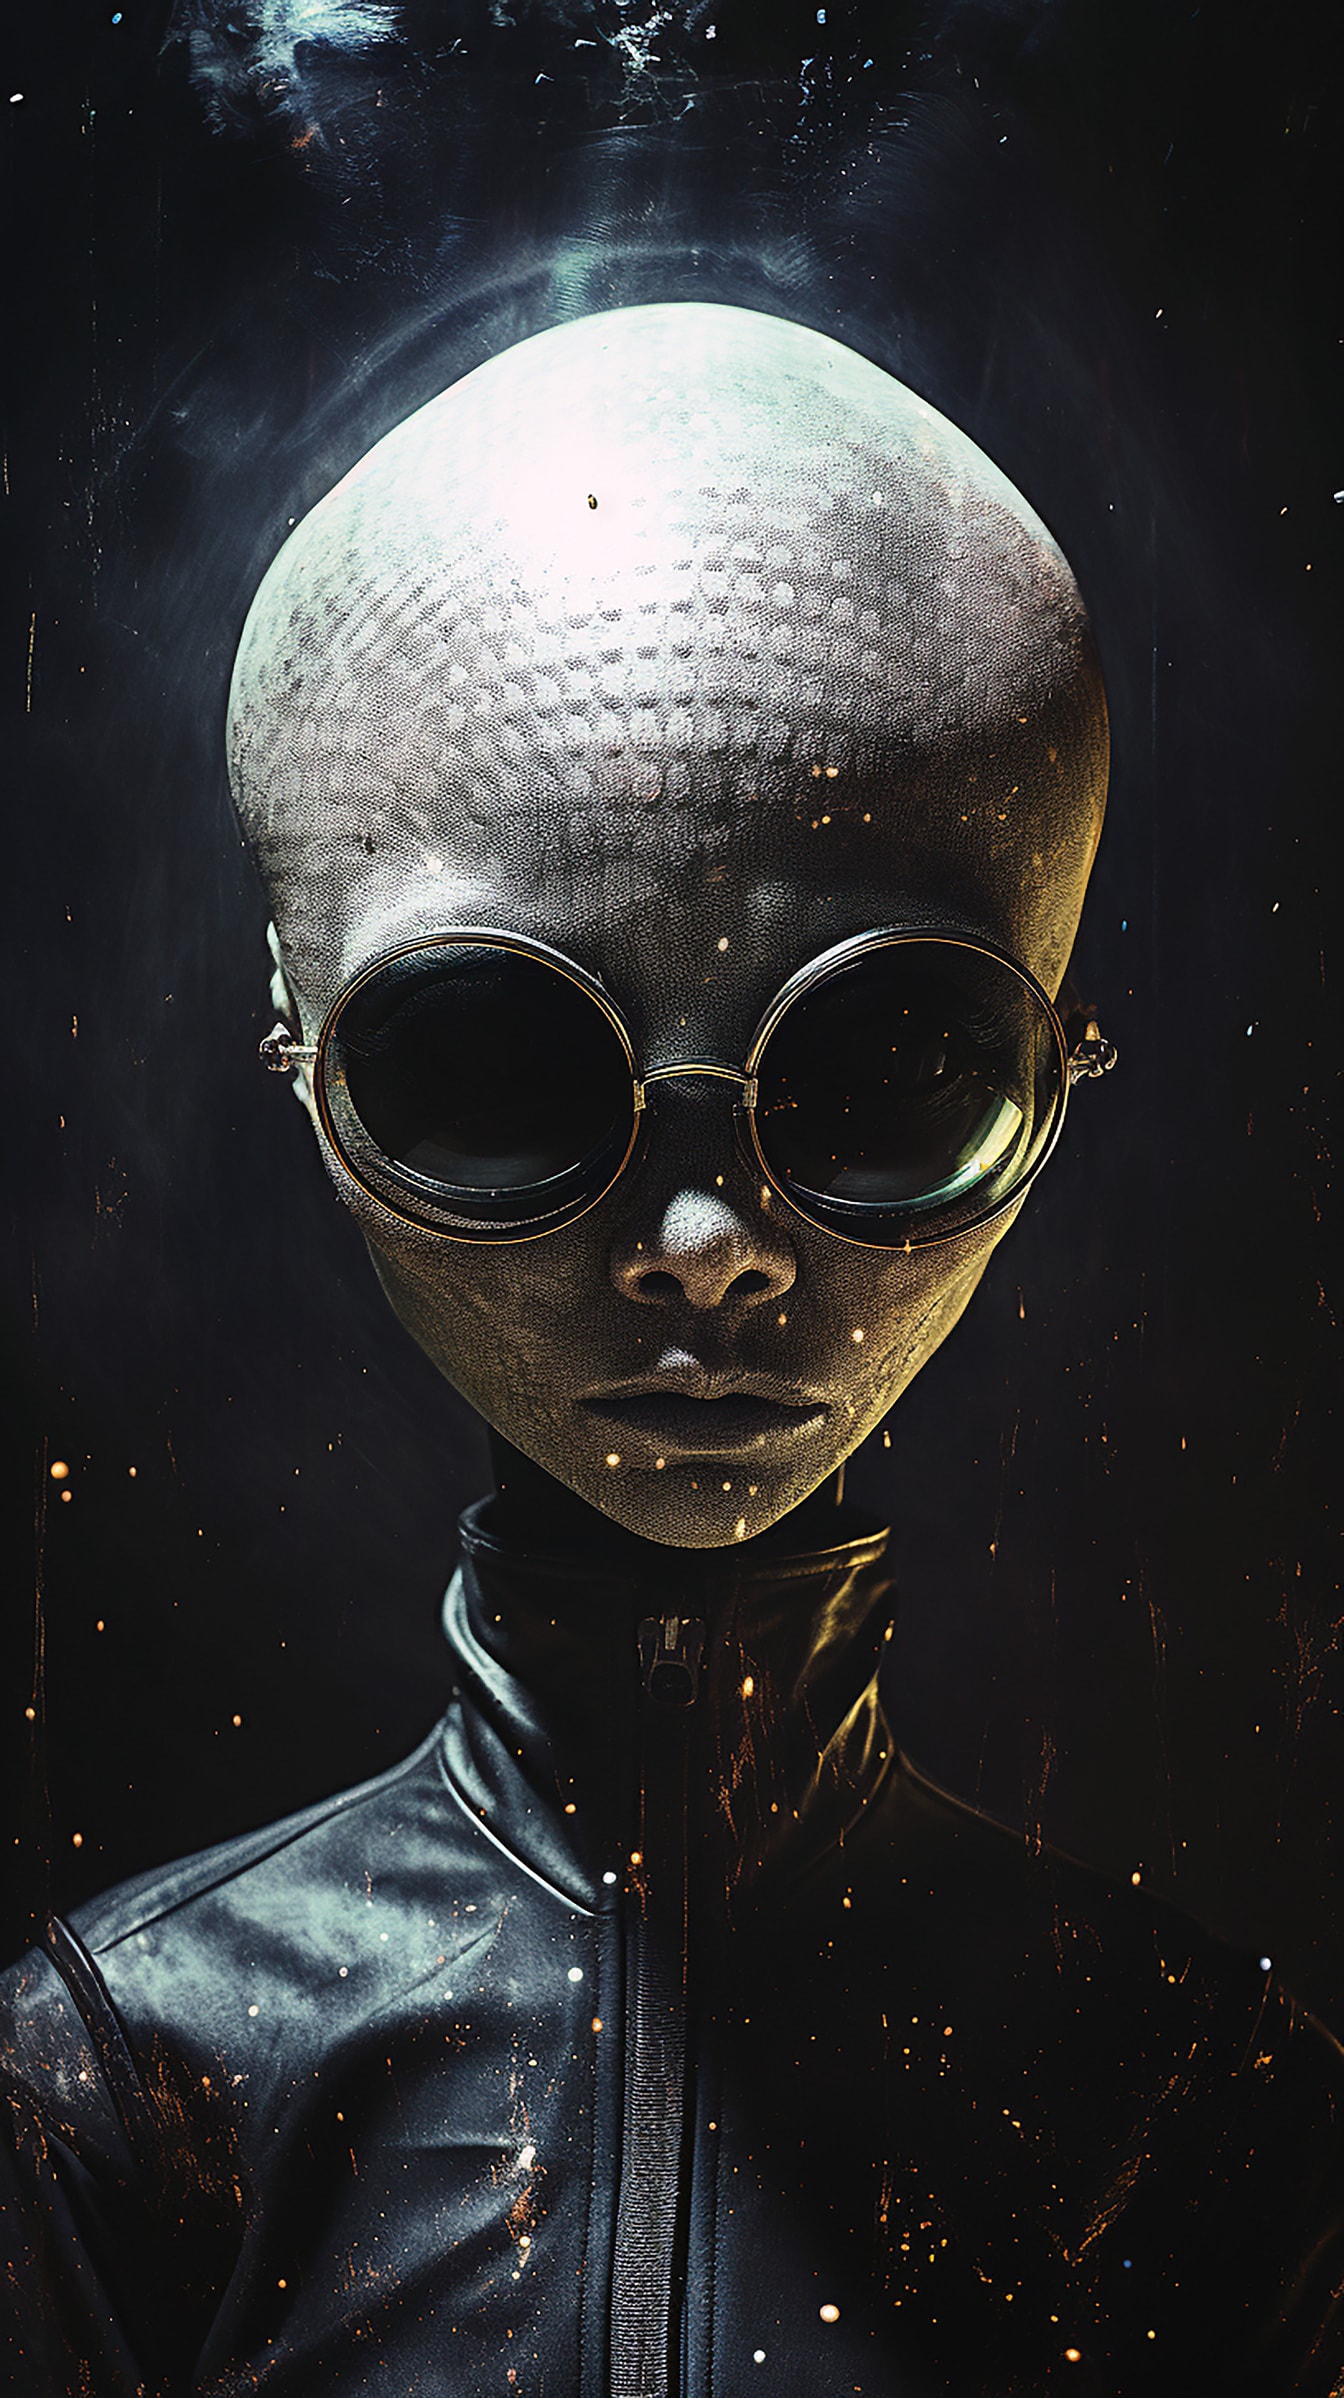 Portret humanoidalnego kosmity w czarnych okularach i skórzanej kurtce